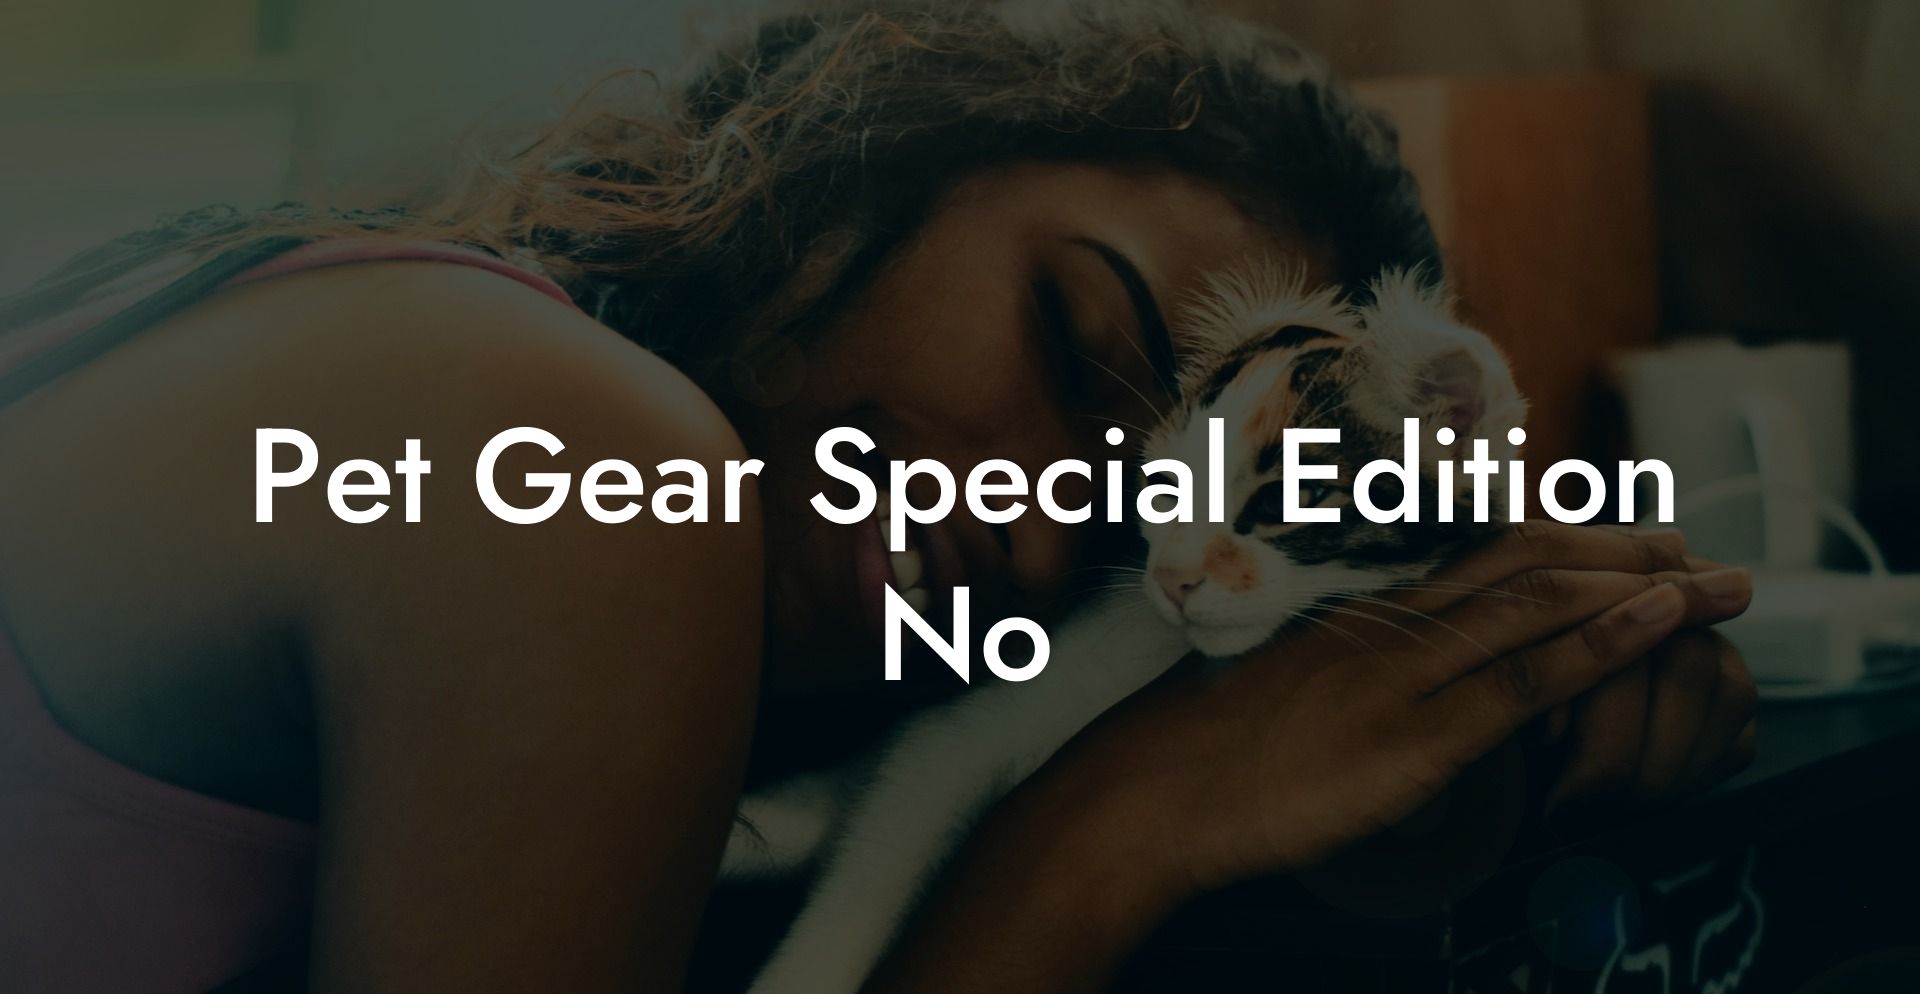 Pet Gear Special Edition No